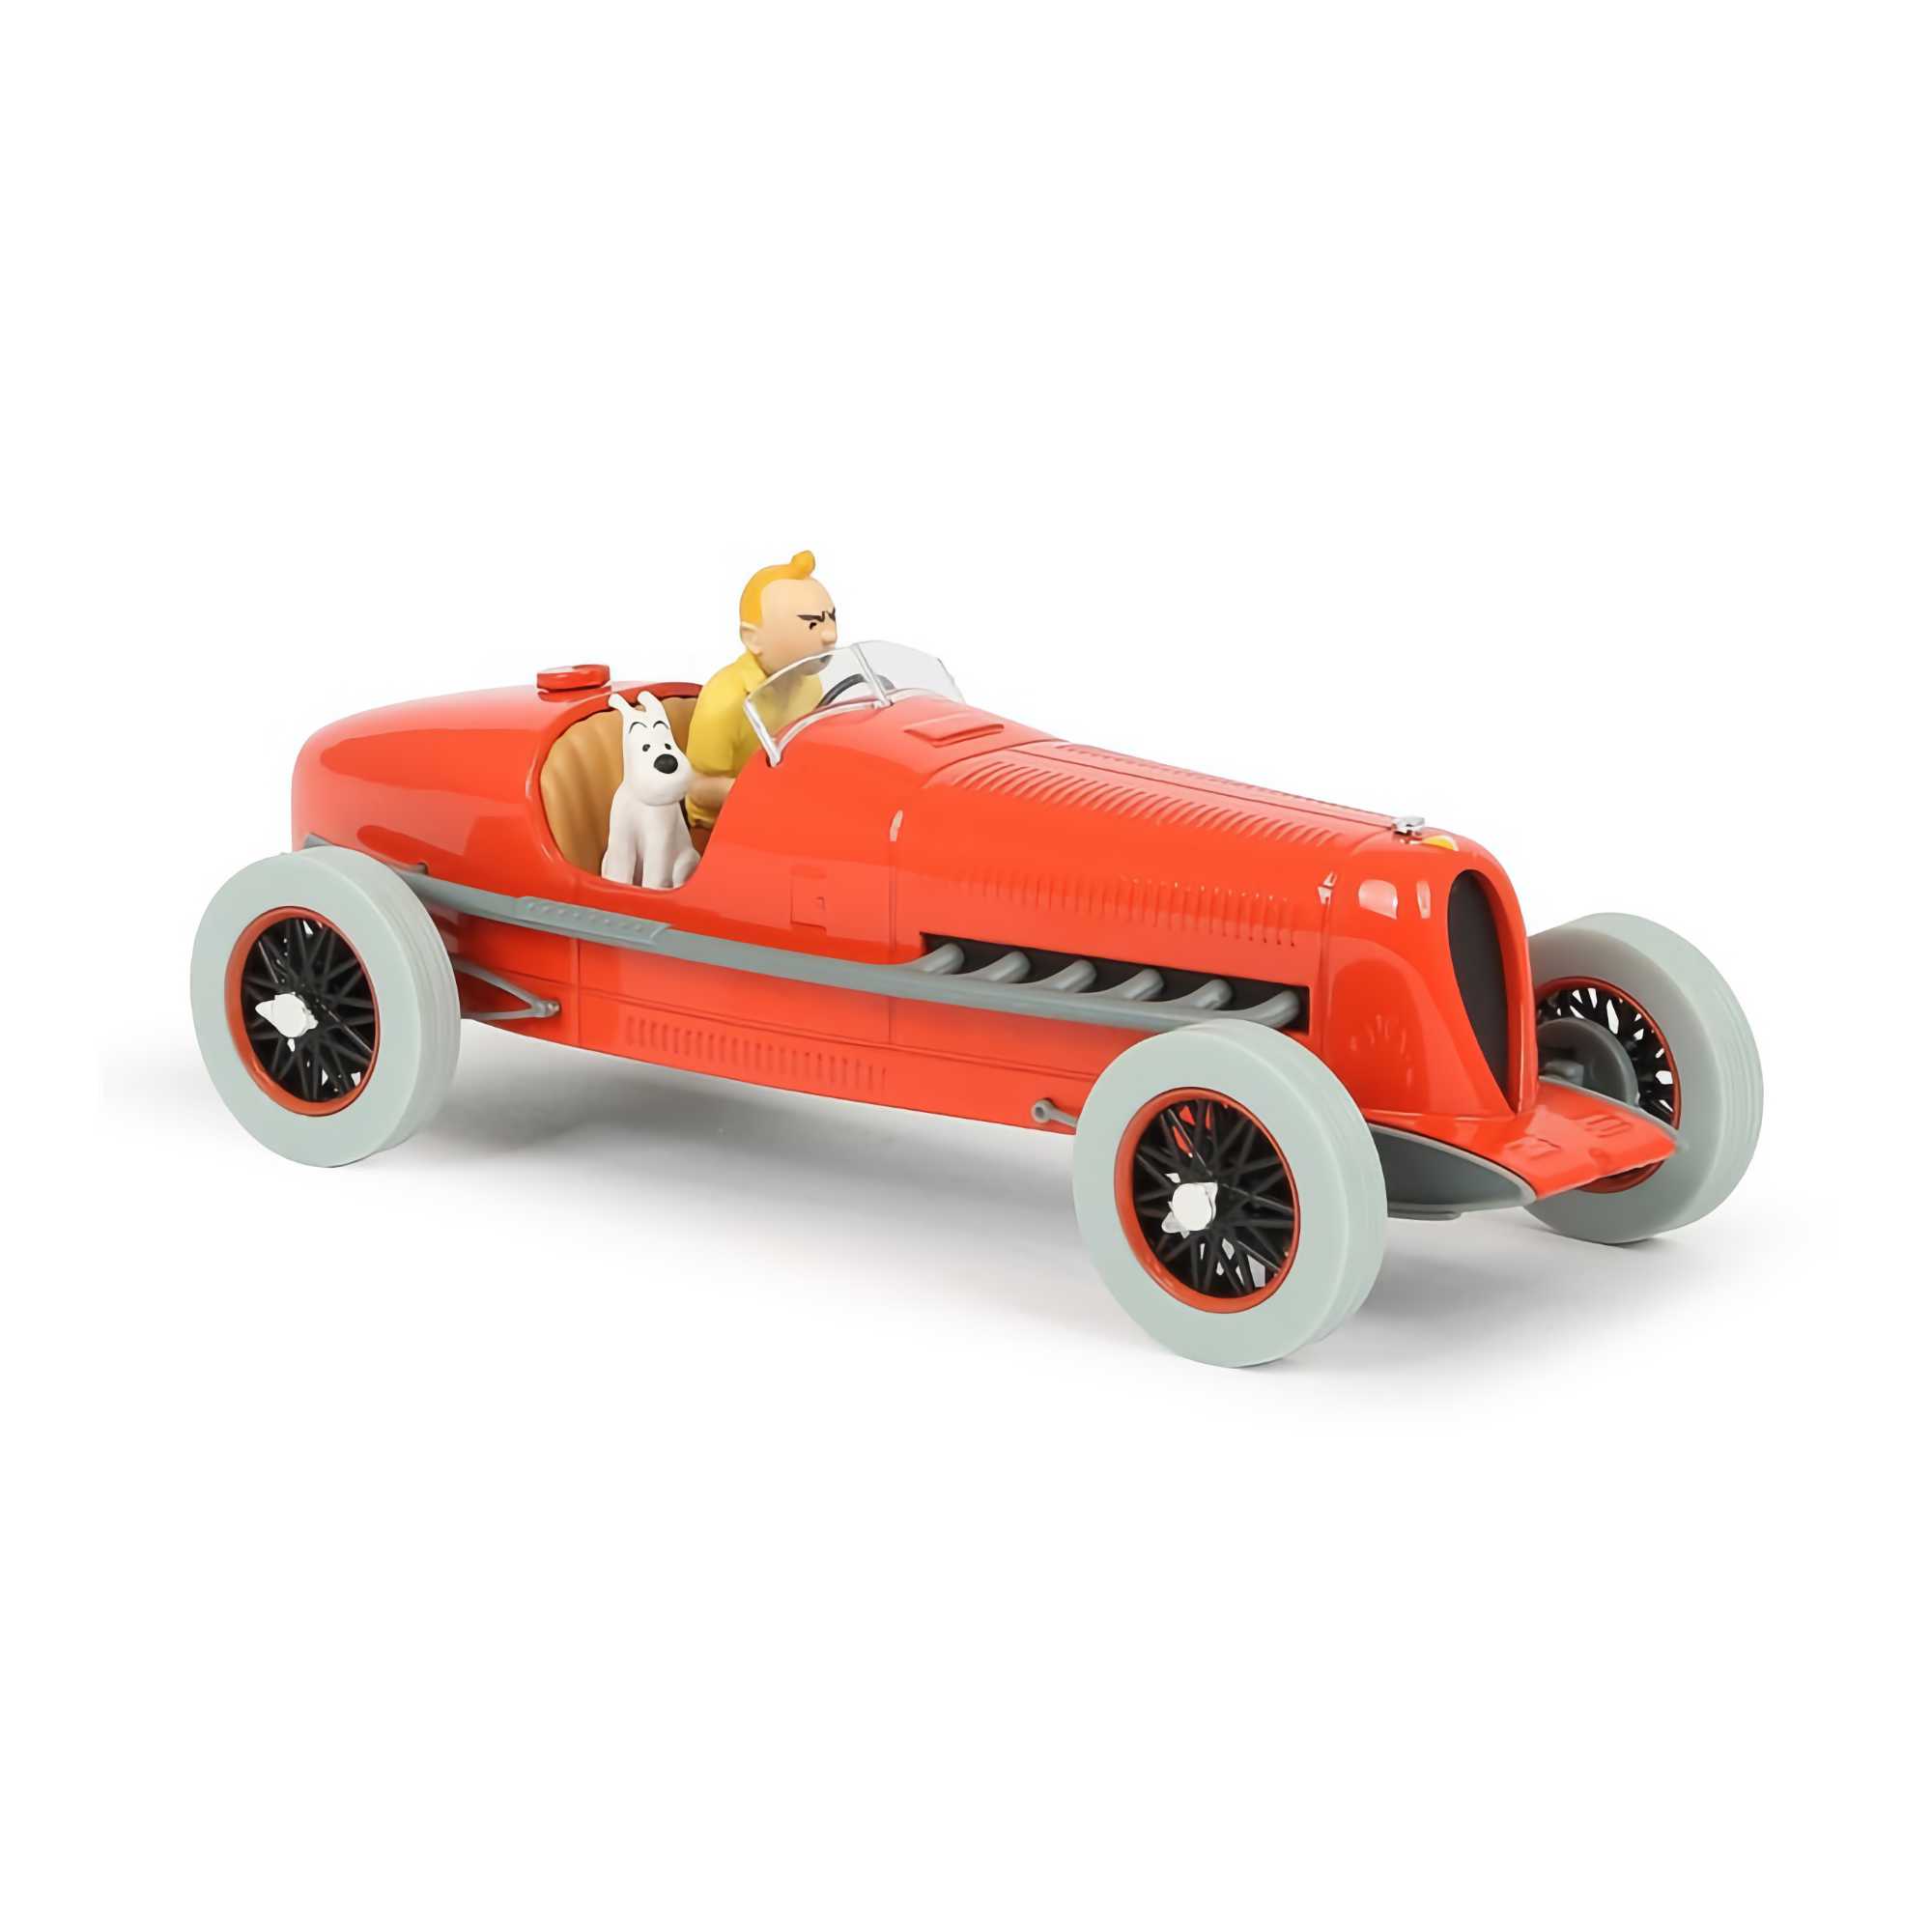 Tintin Transport Model Car: Racing Car Amilcar CGSS Nº01 1/24 (Moulinsart 29901)